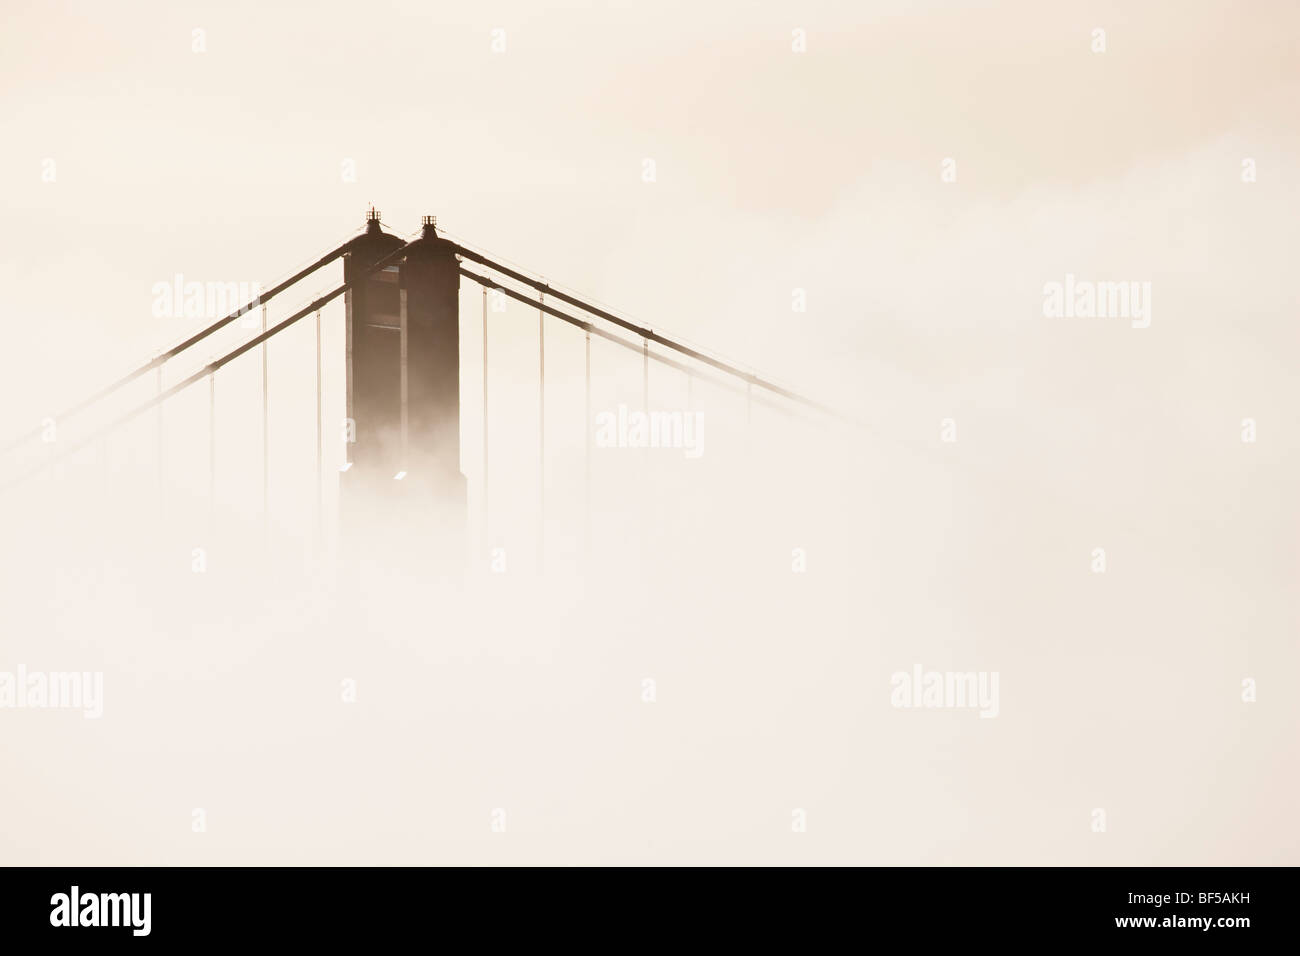 Des piles du pont du Golden Gate Bridge dans le brouillard, San Francisco, Californie, USA, Amérique Latine Banque D'Images